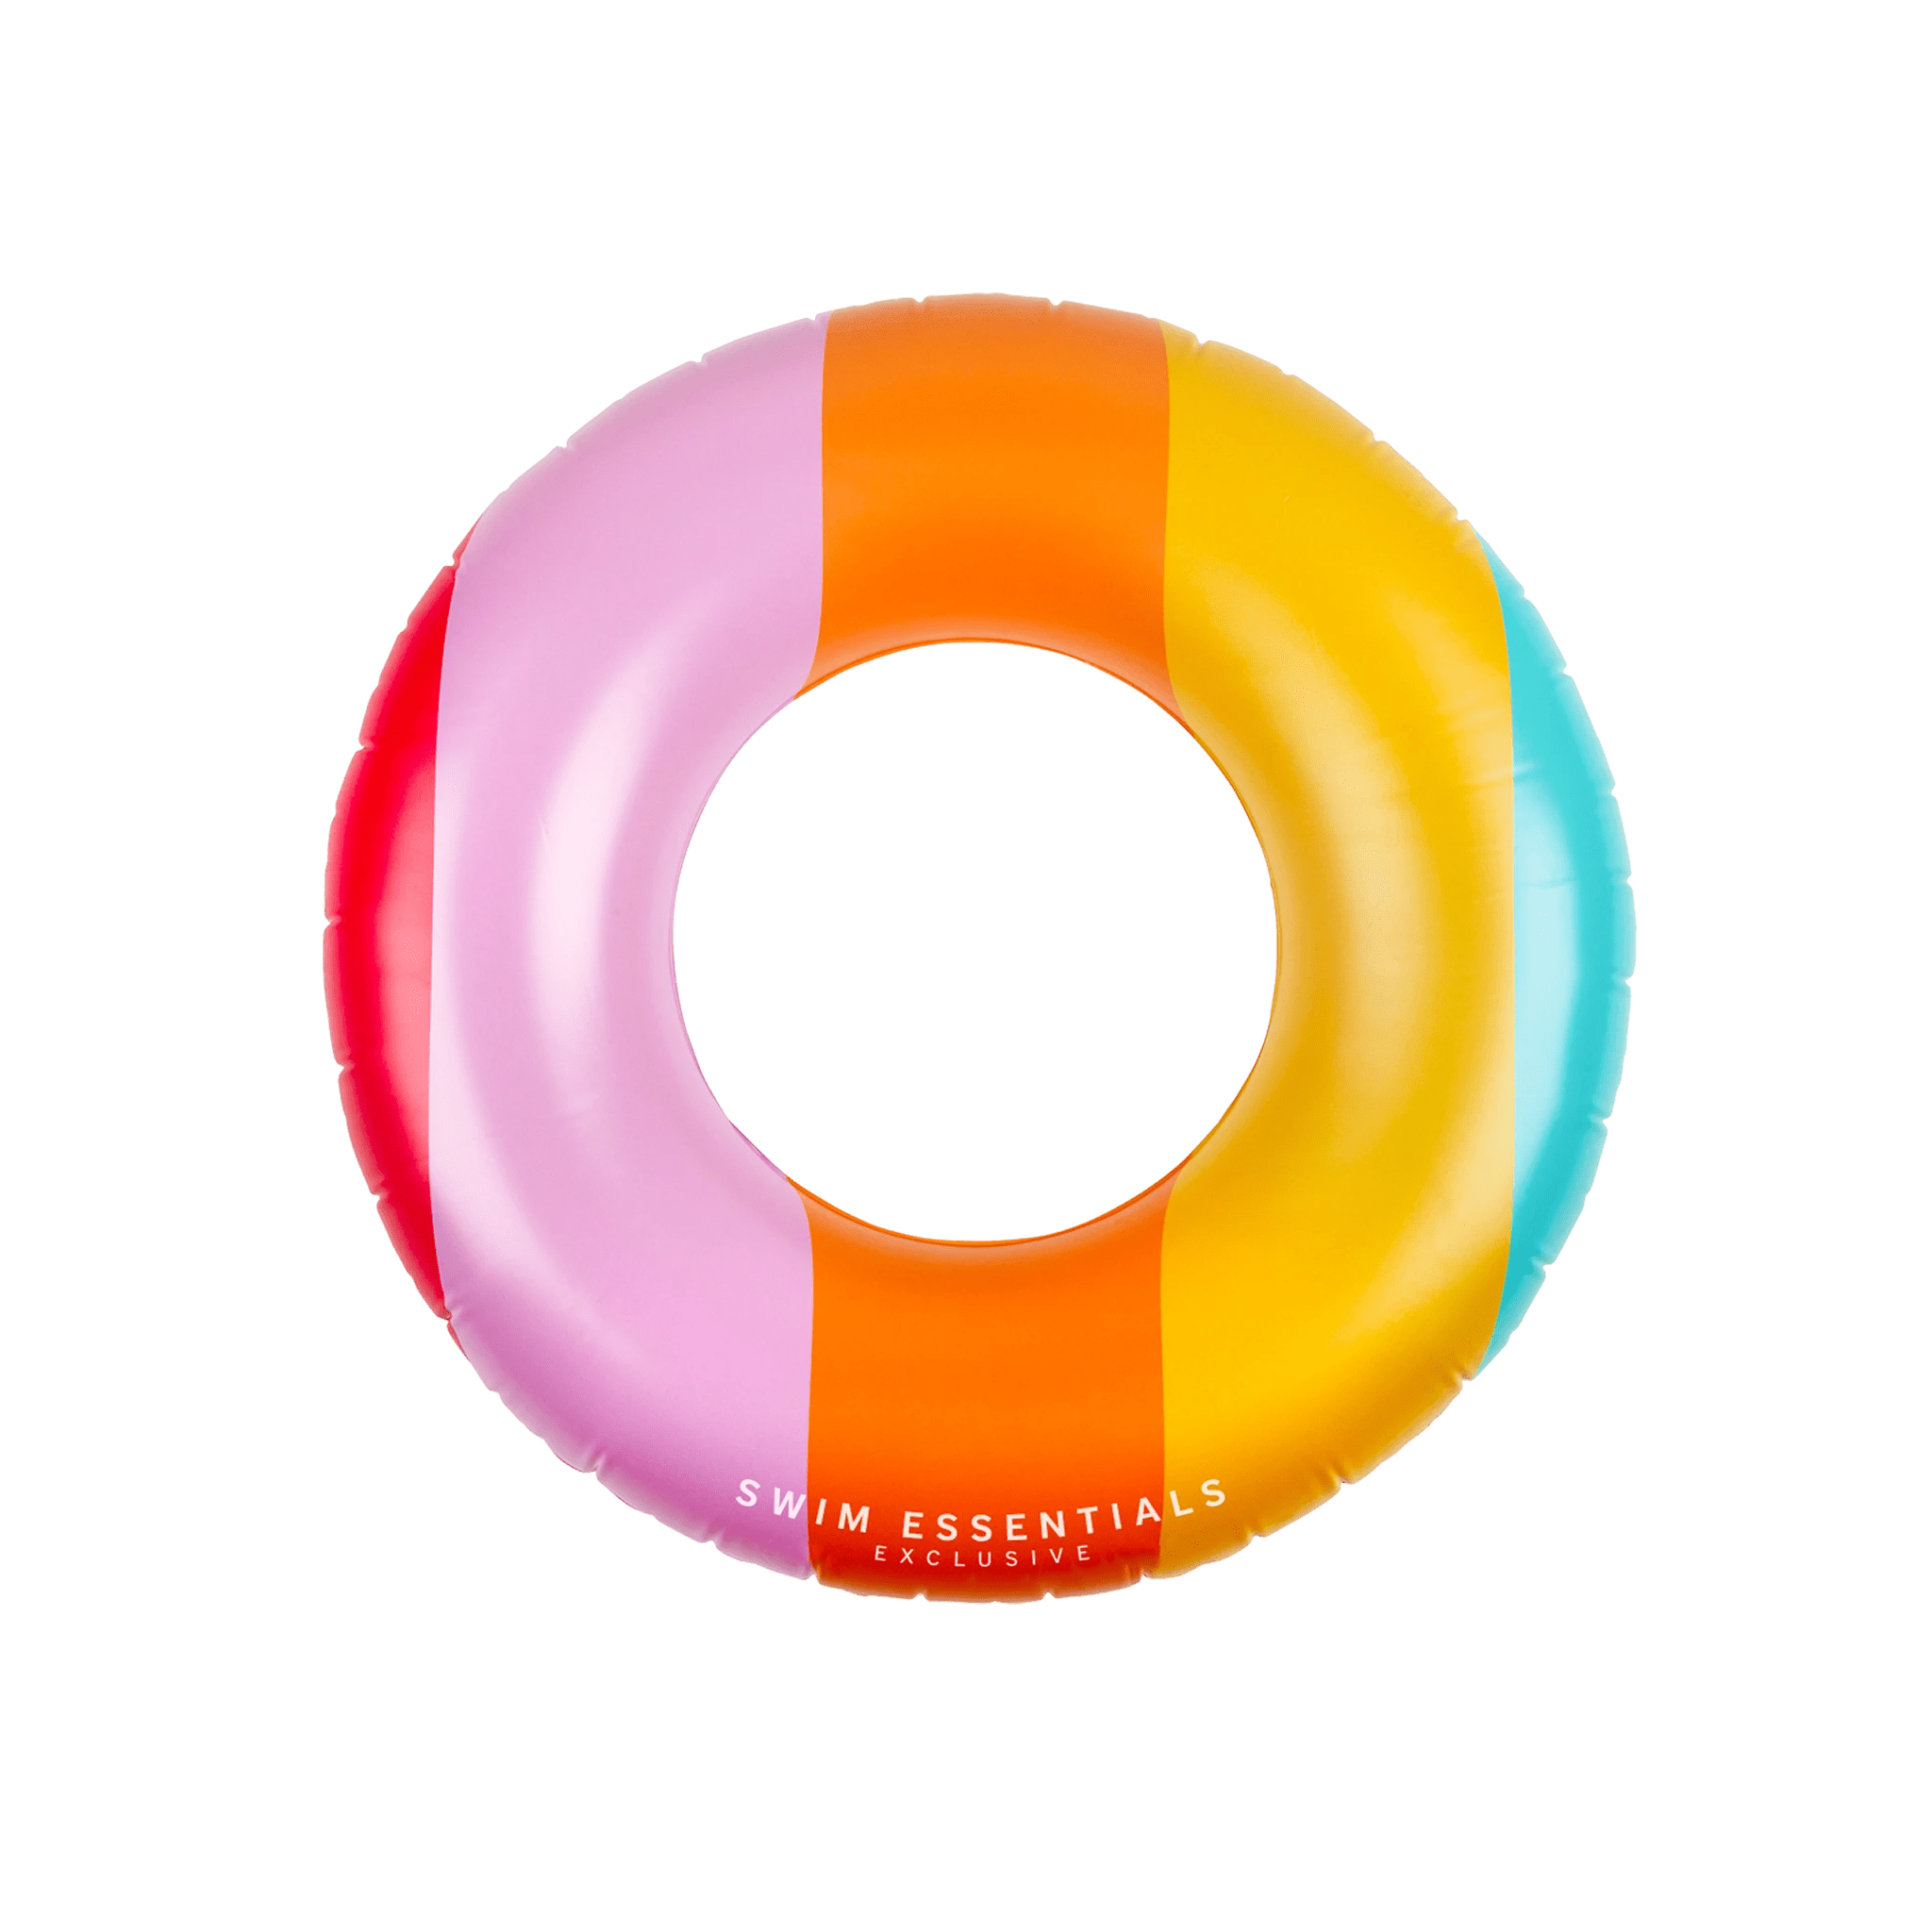 The Essentials 90cm Rainbow Float